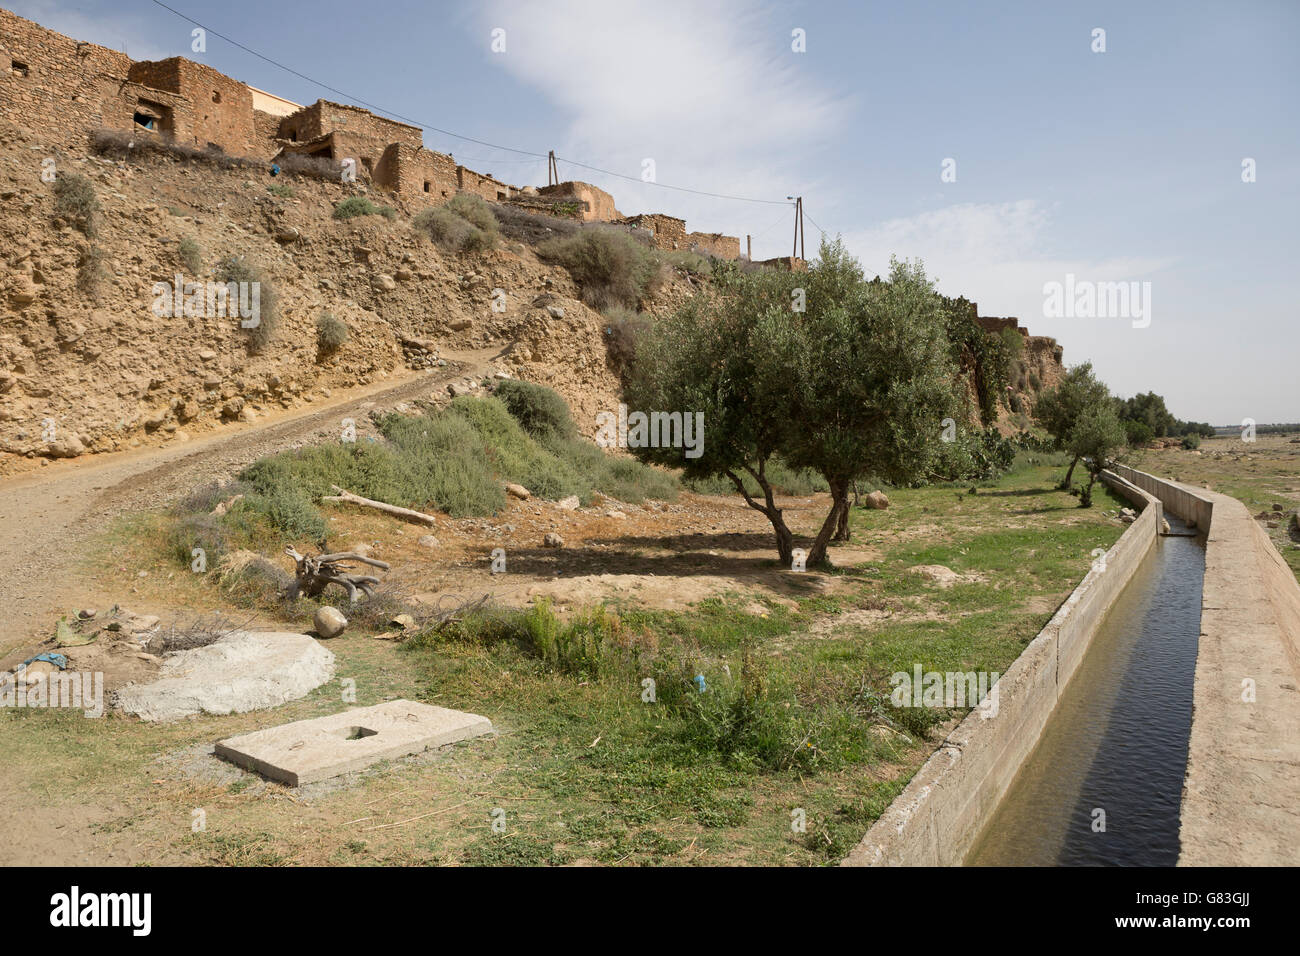 Der Bewässerung-Kanal in Chichaoua Prov. brachte erhöhten Produktivität Landwirte in dieser trockenen Gegend von Marokko. Stockfoto